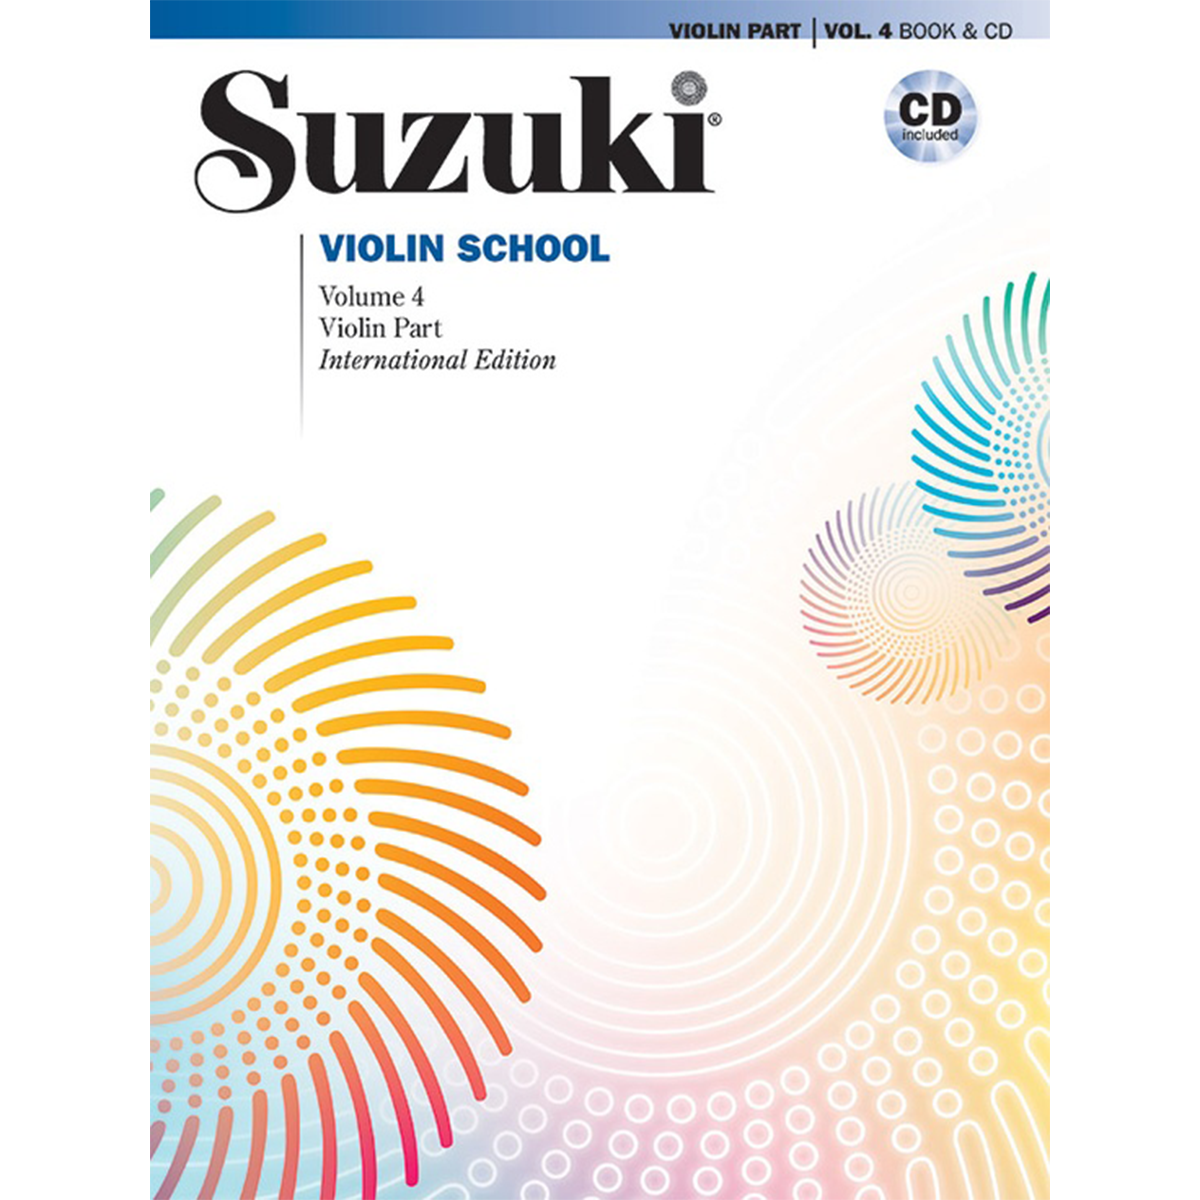 Suzuki Violin School: Violin Part, Vol. 4 Book & CD in action